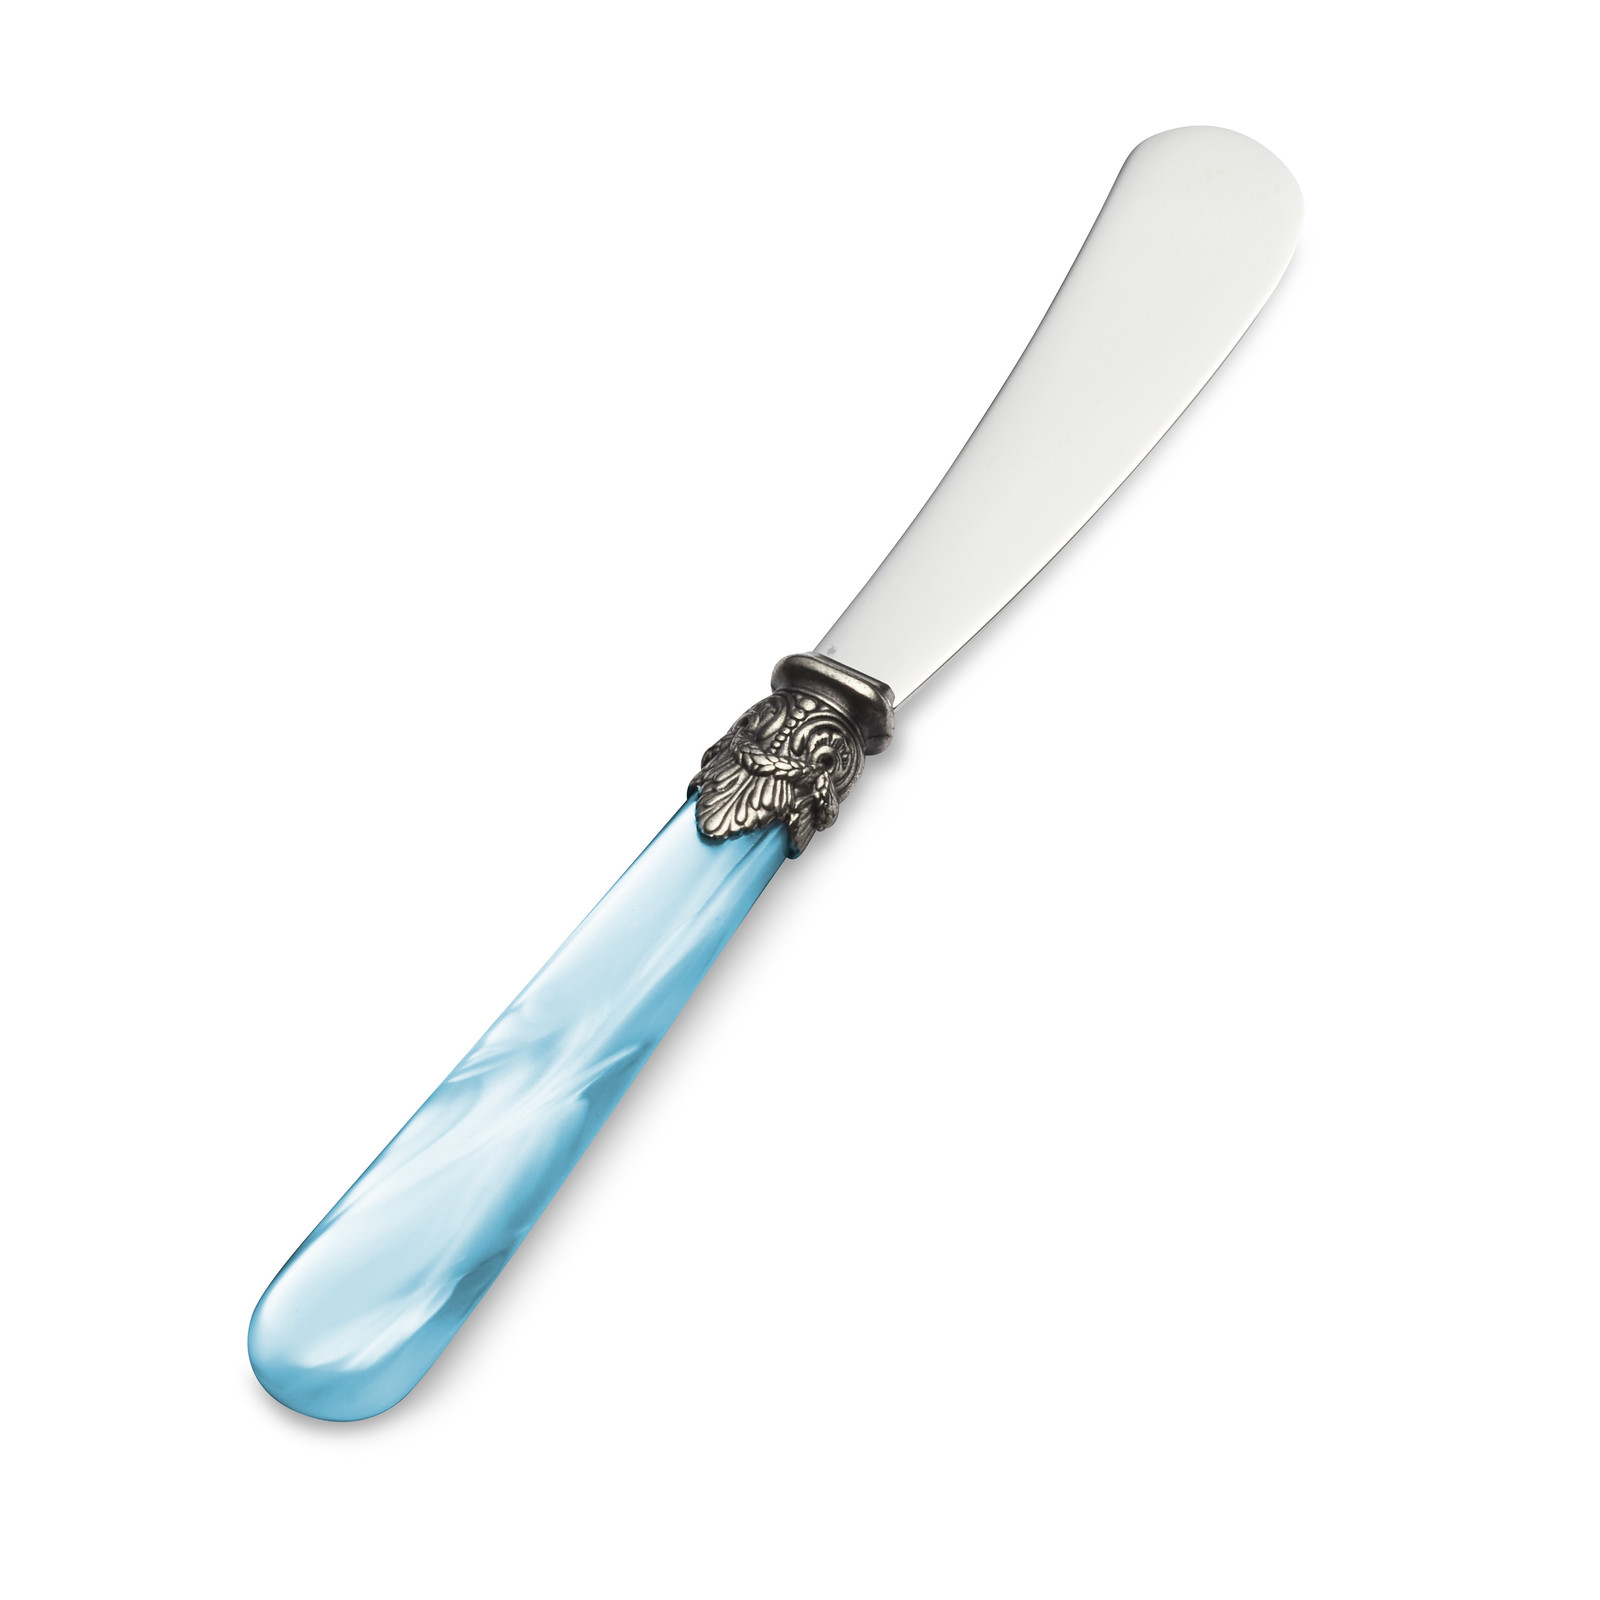 Buttermesser / Tapasmesser, Hellblau mit Perlmutt (18 cm)